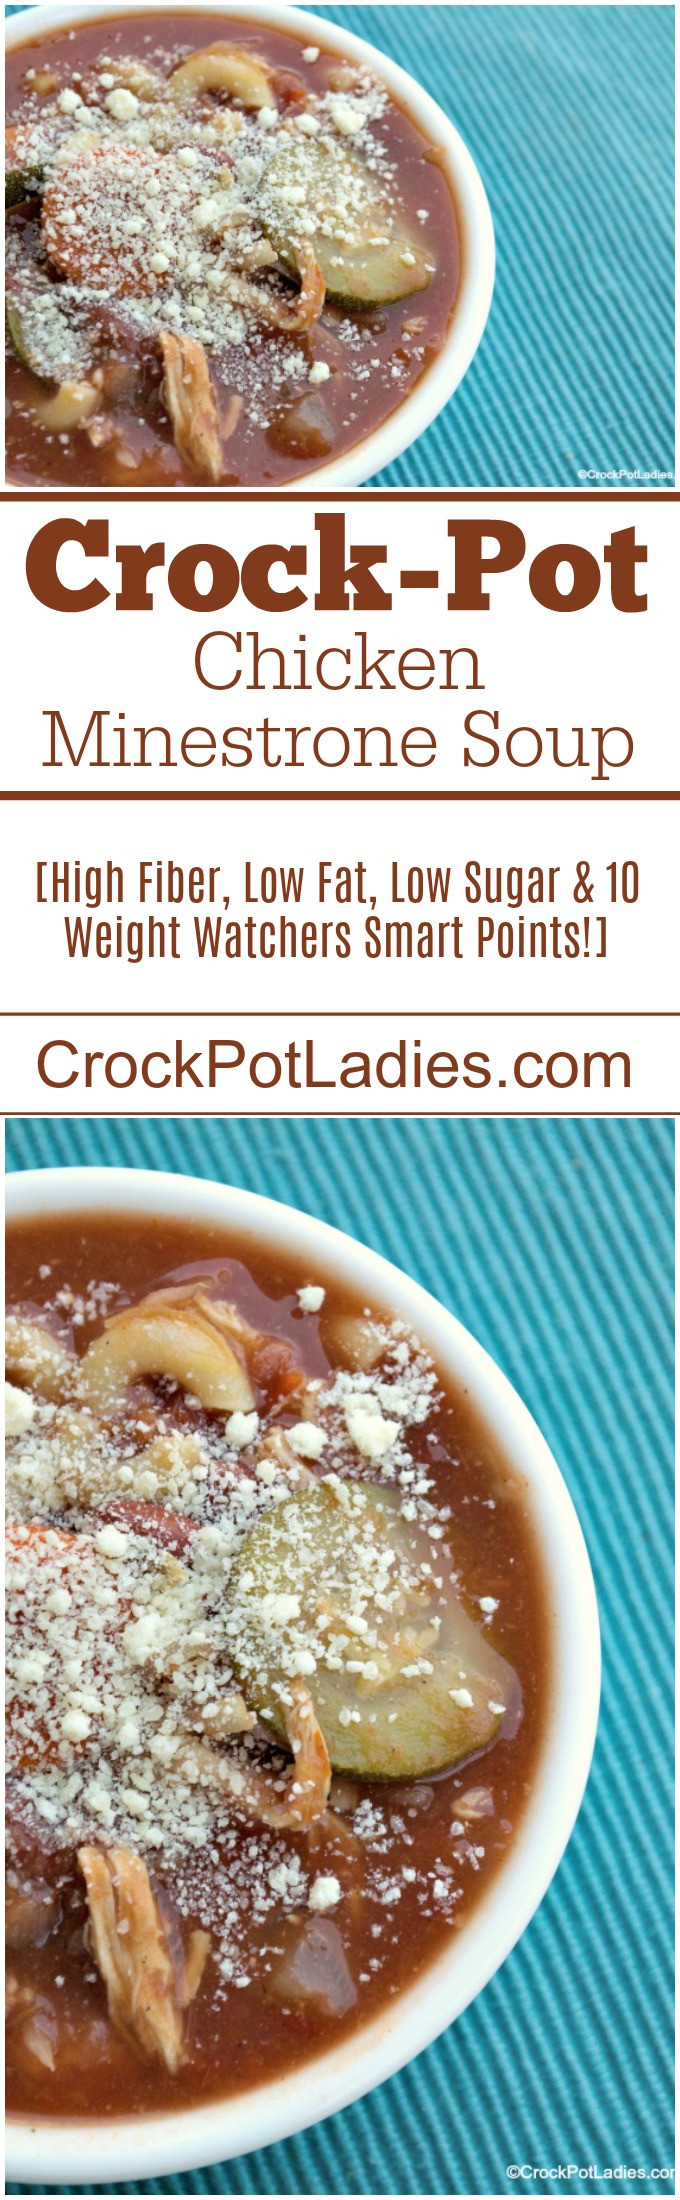 Low Fat High Fiber Recipes
 Crock Pot Chicken Minestrone Soup Crock Pot La s